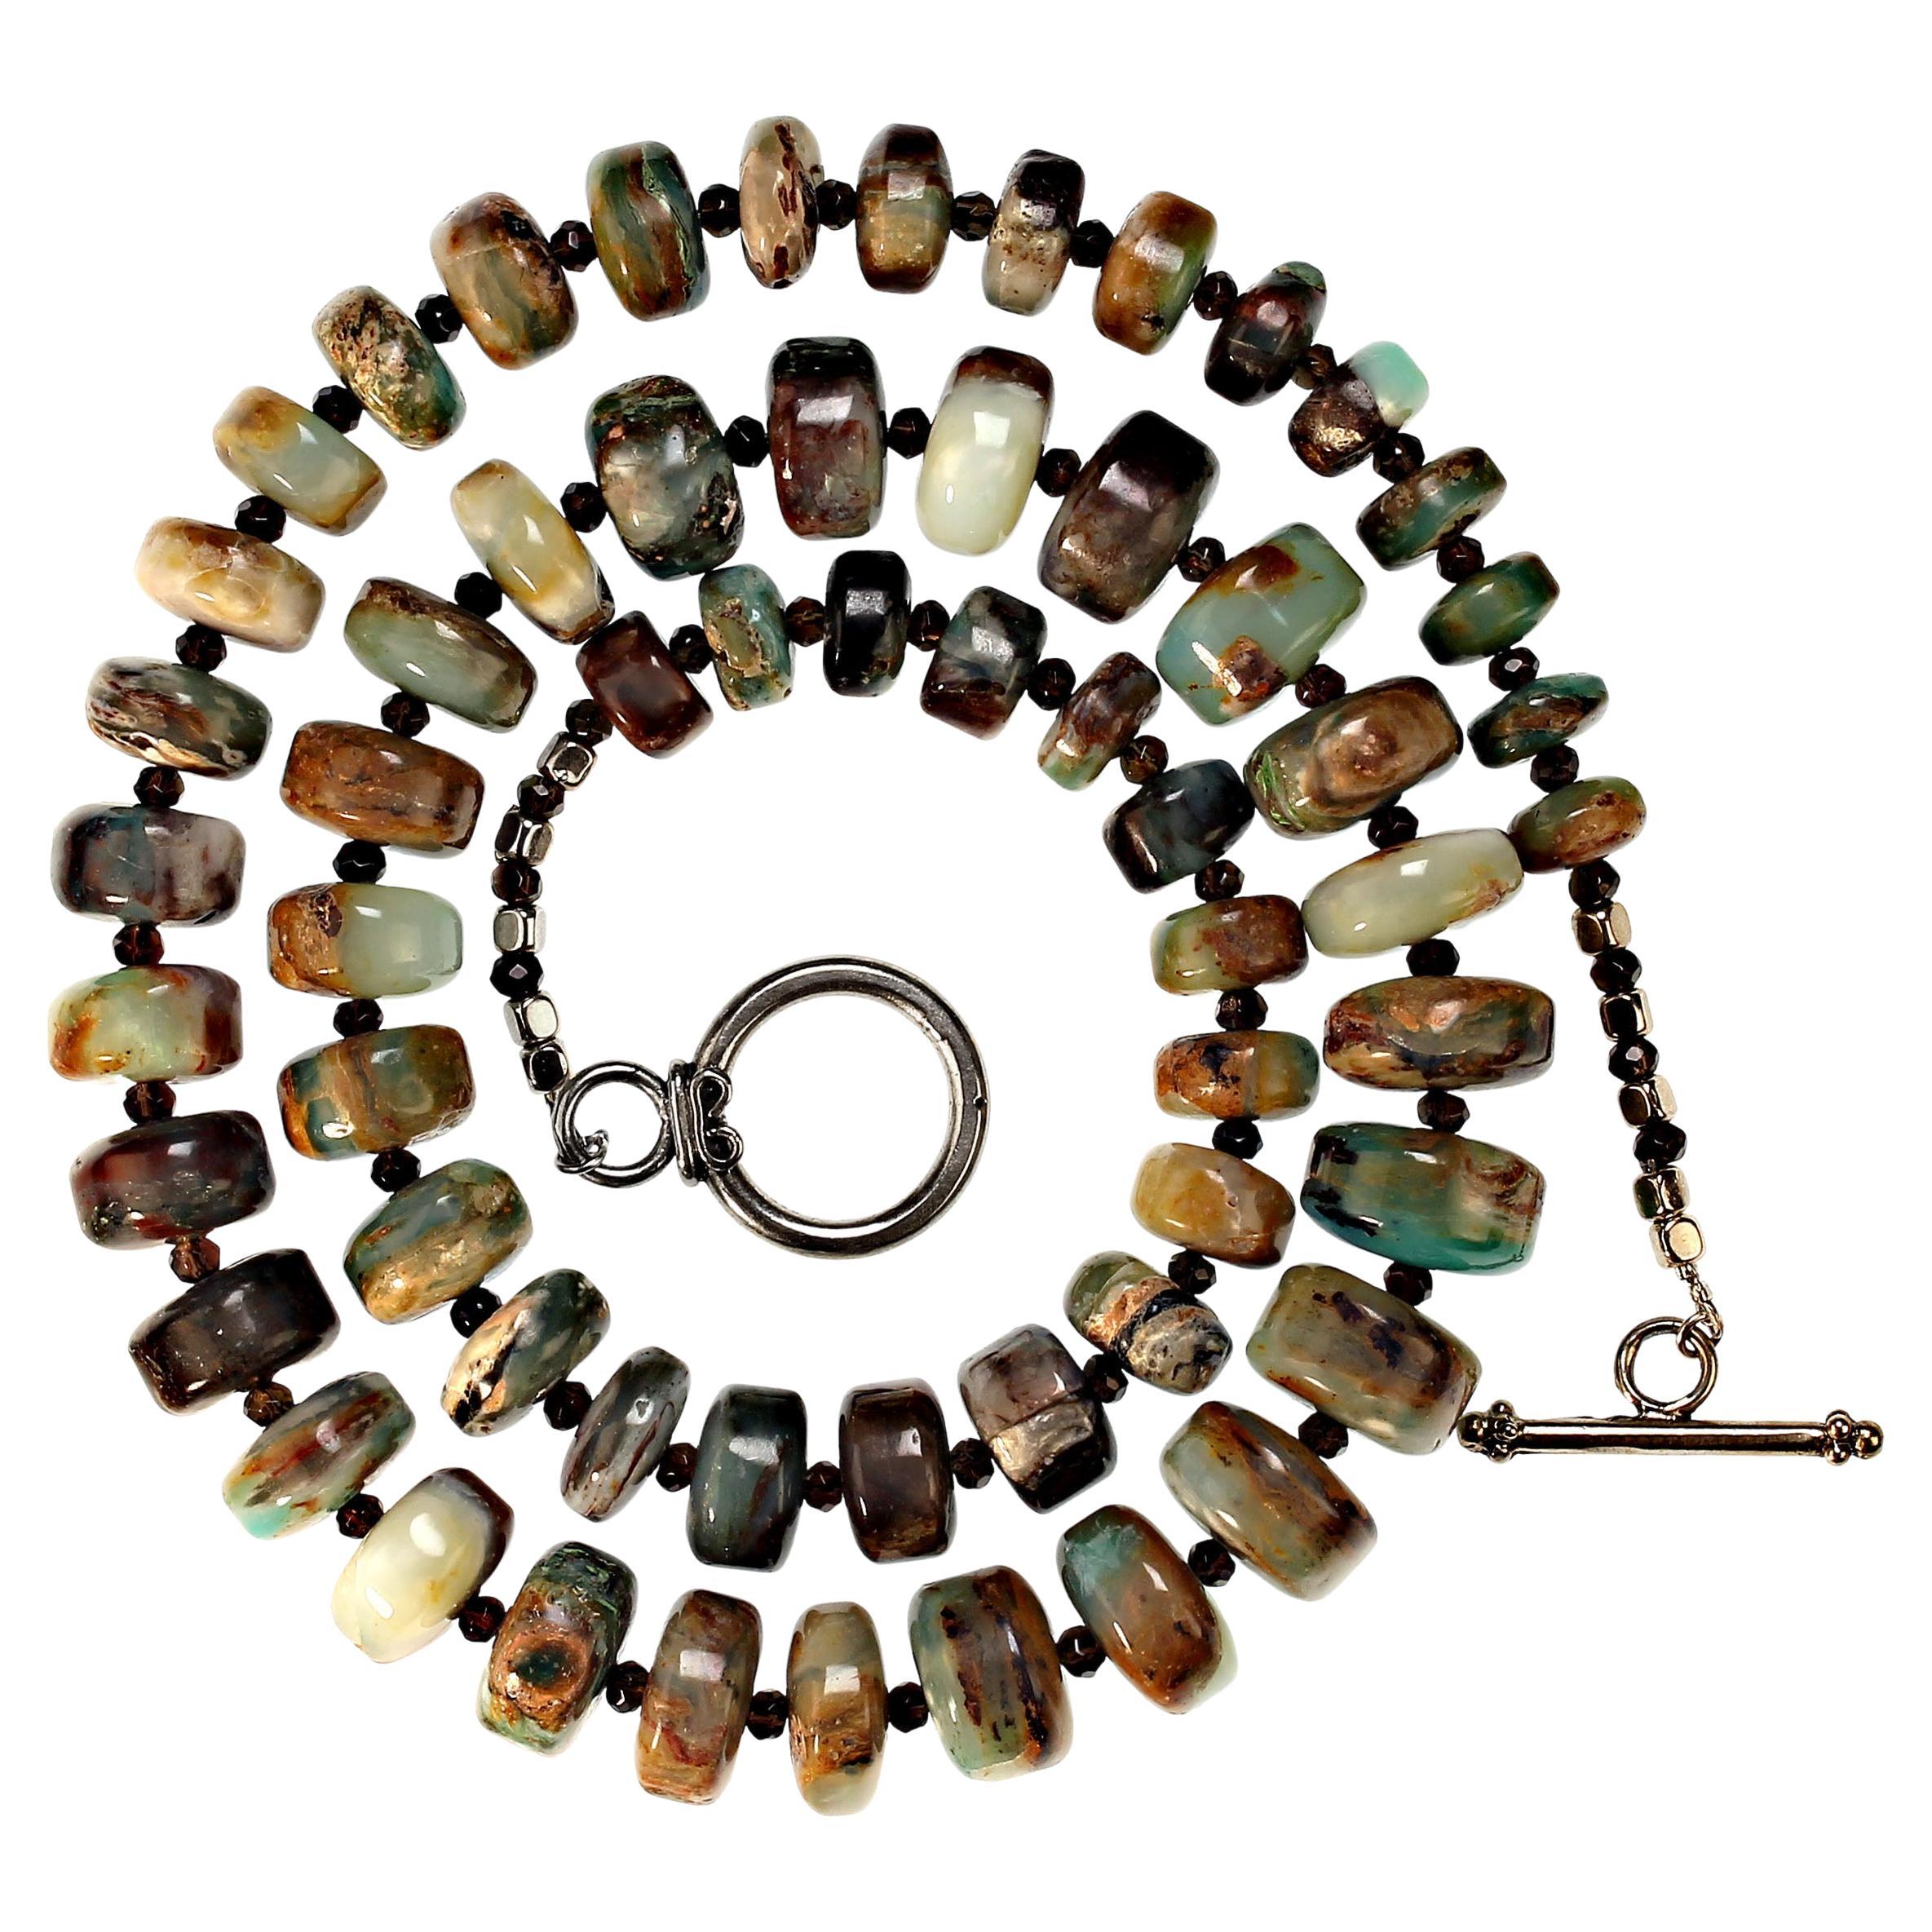 28,5 Zoll abgestufte Rondelle aus hochpoliertem peruanischem Opal Halskette.  Diese wunderschönen Perlen sind mit funkelndem, facettiertem Rauchquarz verziert. Der peruanische Opal ist von 11 mm bis 16 mm abgestuft.  Der Rauchquarz ist 3 mm groß.